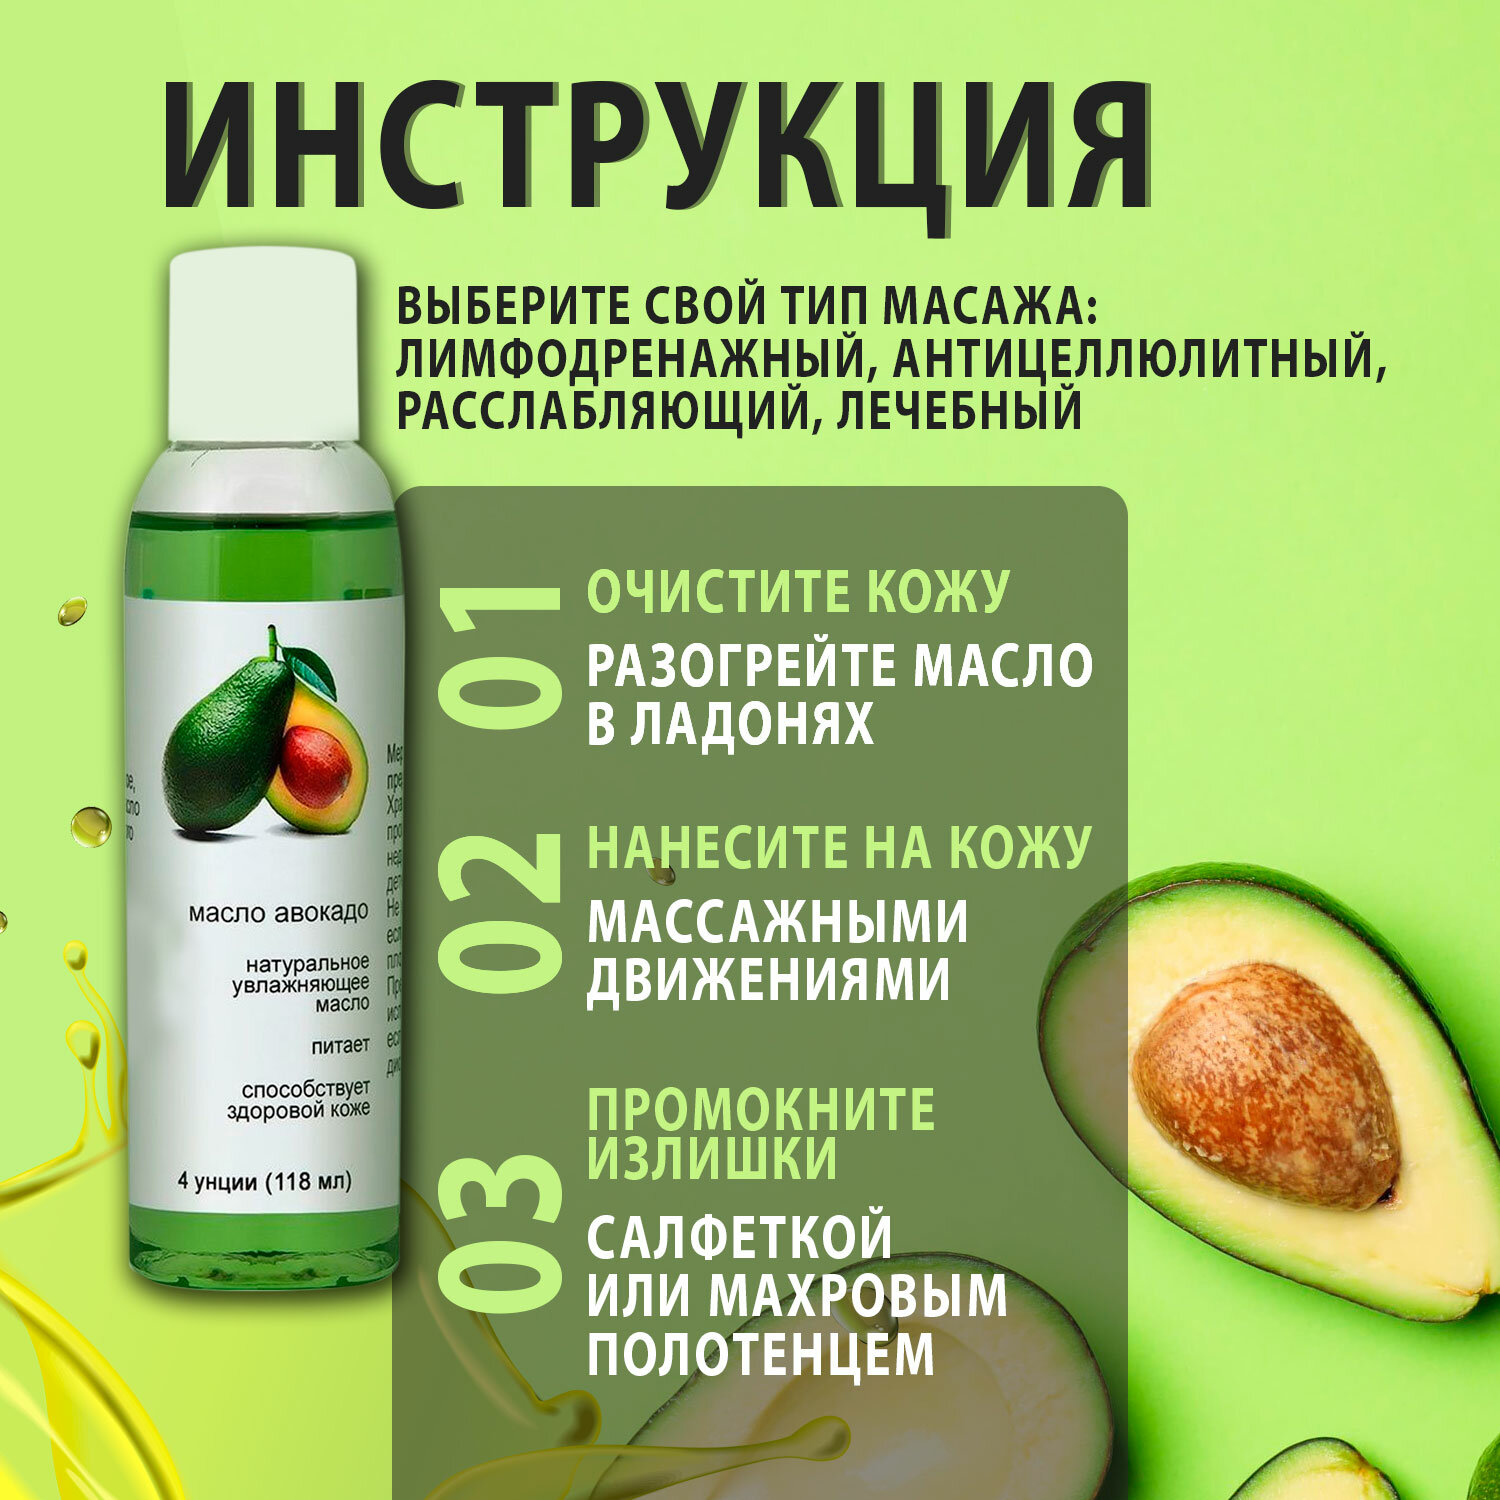 Масло авокадо 100% для массажа кожи лица и тела, натуральное, косметическое, ручной и аппаратный массаж, подтягивающий эффект, от растяжек, профессиональное массажное расслабляющие жирное масло